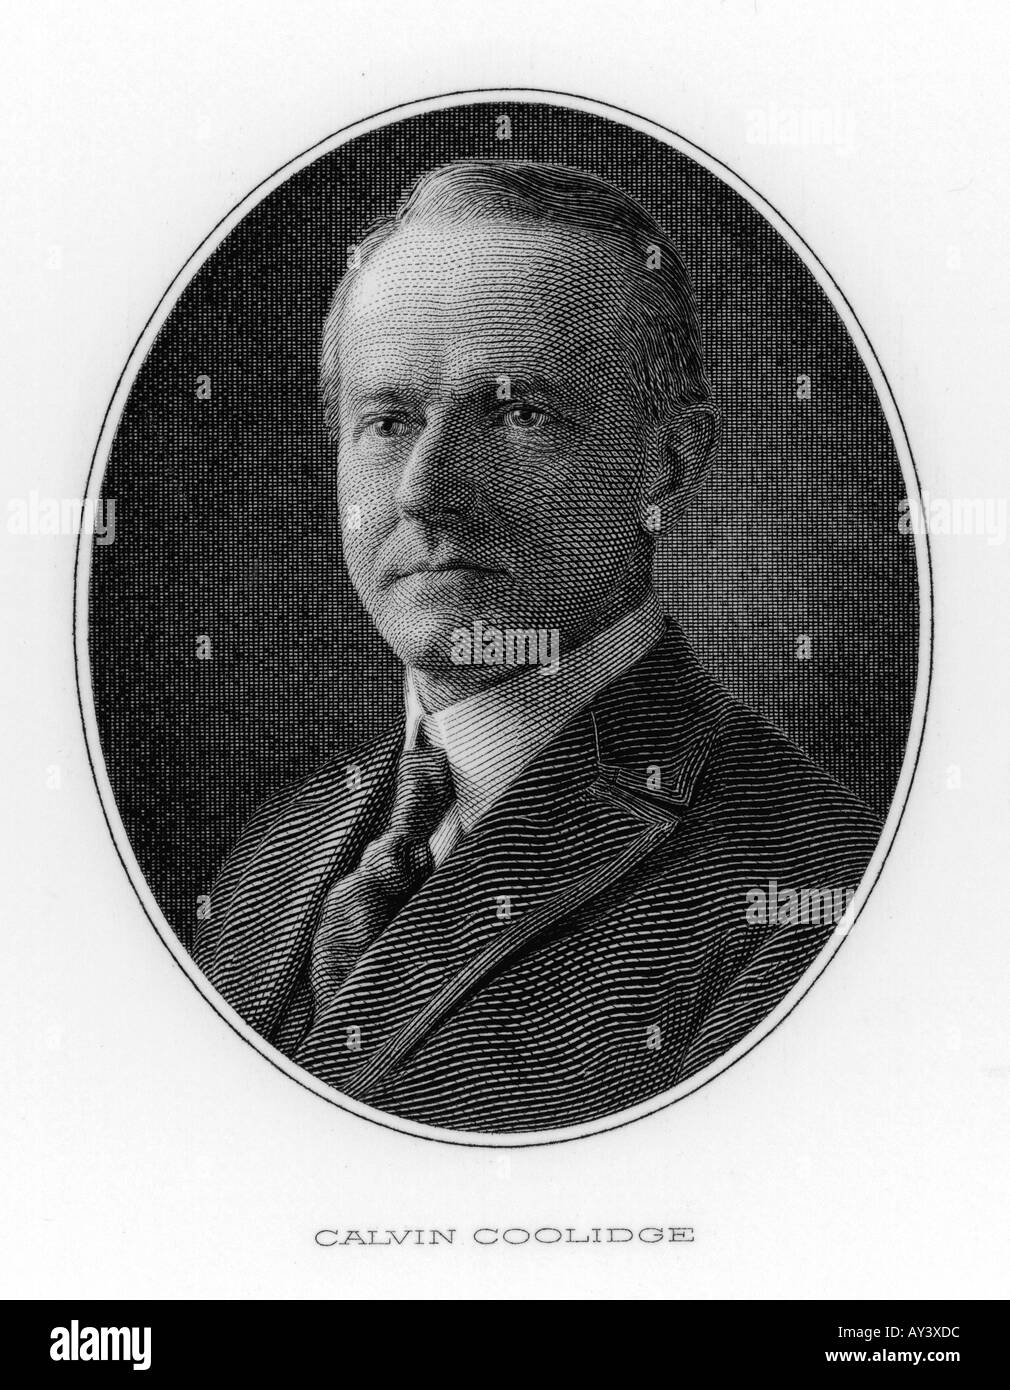 Calvin Coolidge 20c Stock Photo